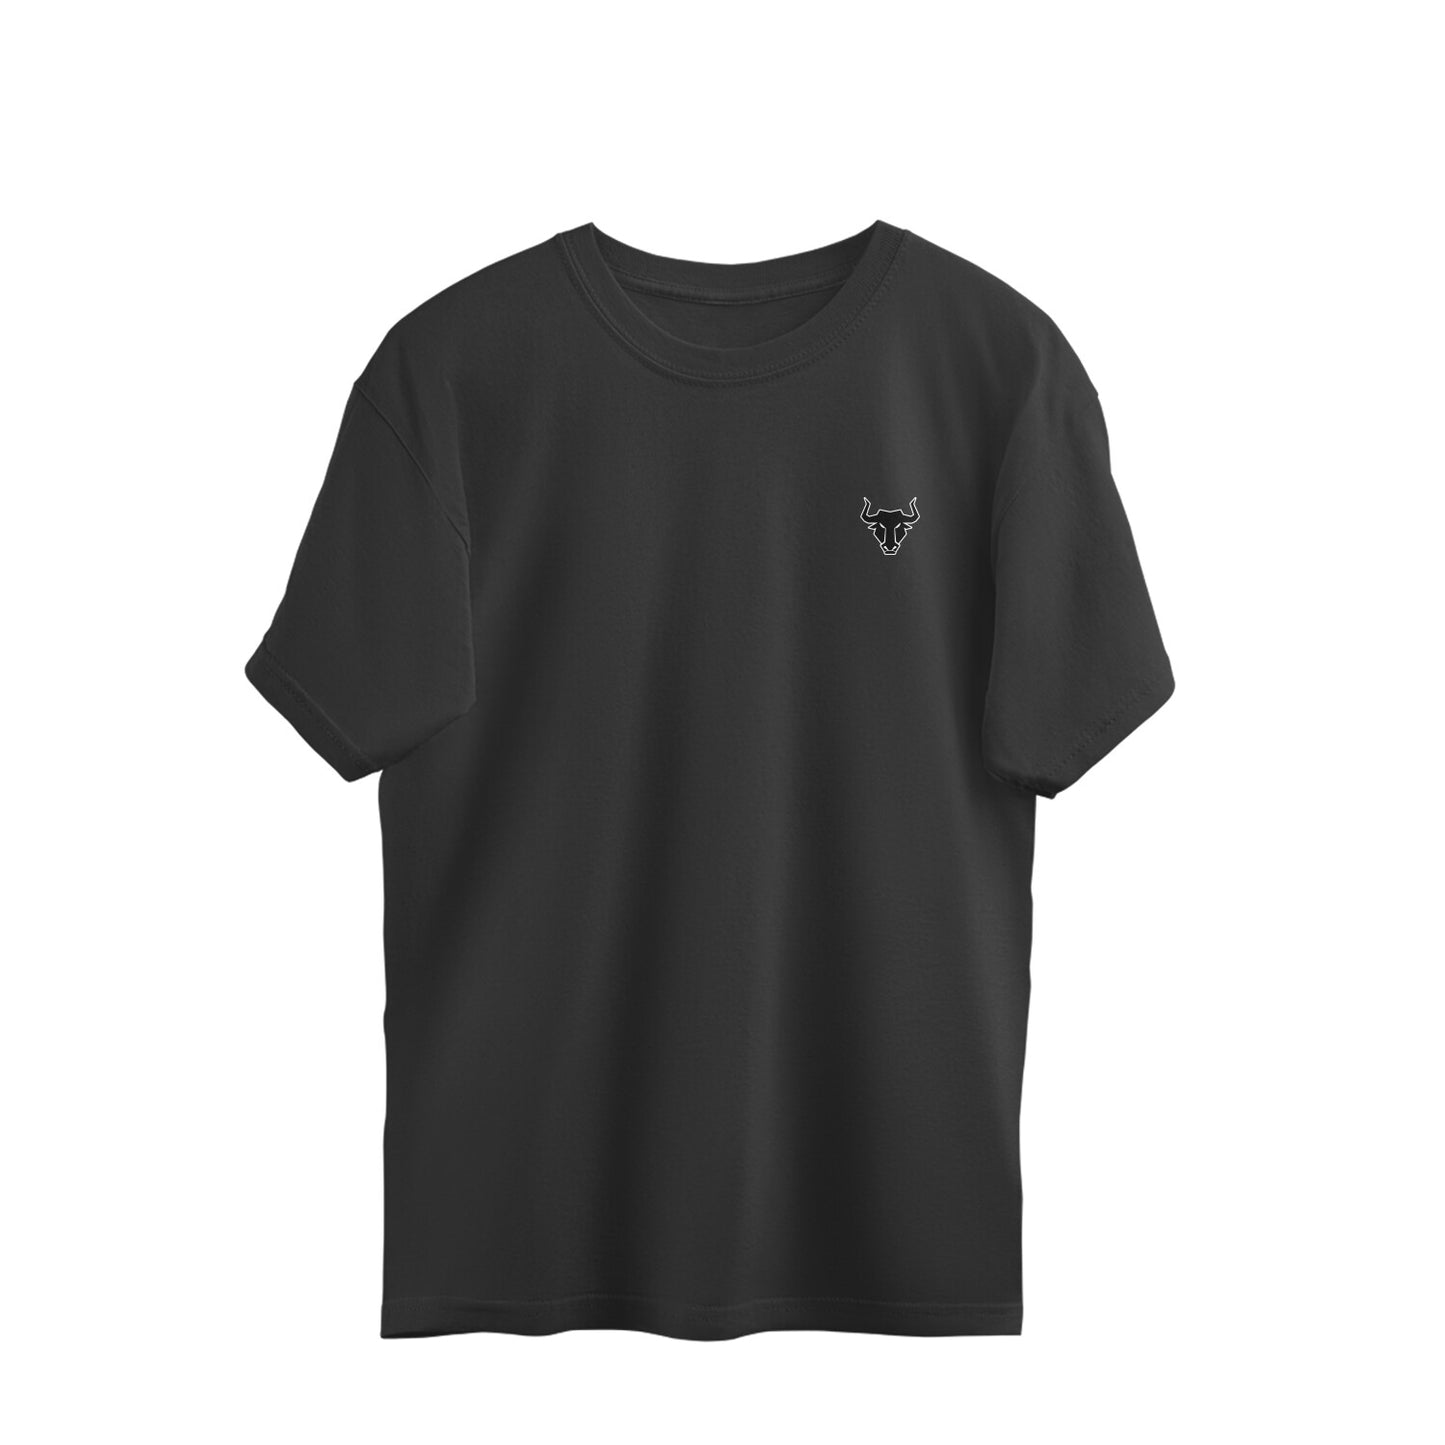 Men's Oversized Black Plain T-shirt